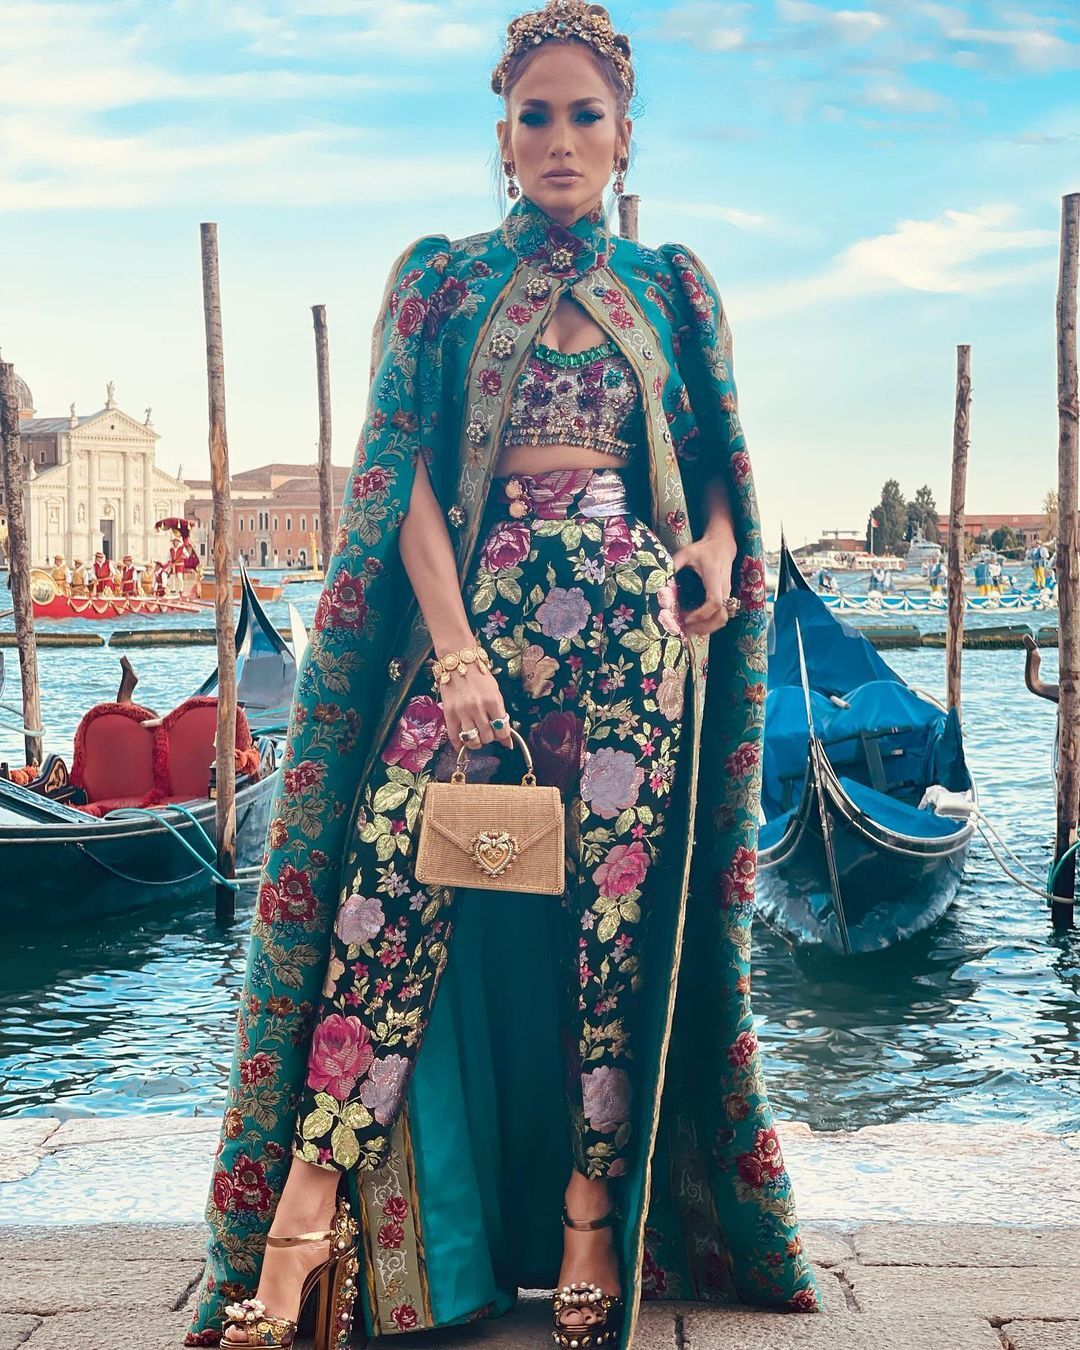 Jennifer Lopez tham gia show của Venice với một bộ cánh đầy sự vương giả. Cô còn đội thêm một chiếc vương miện trên đầu để nhấn mạnh vị thế hàng đầu của mình